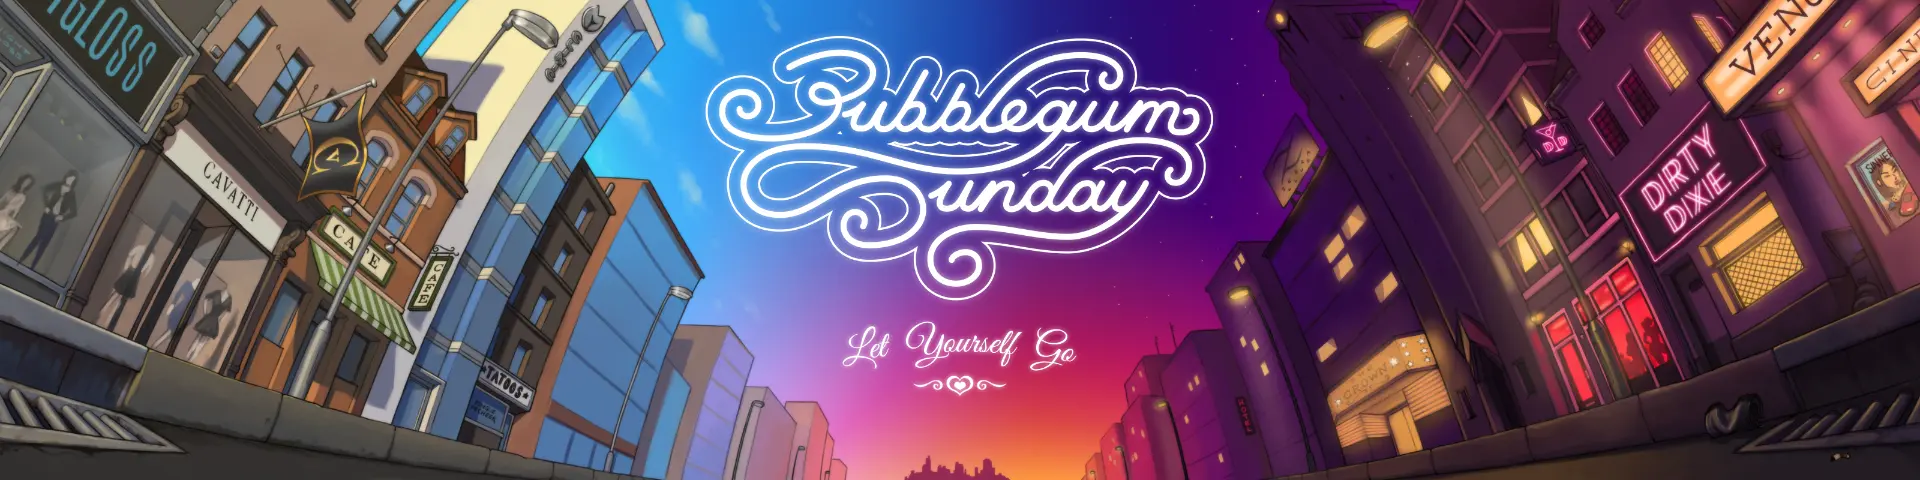 Bubblegum Sunday main image